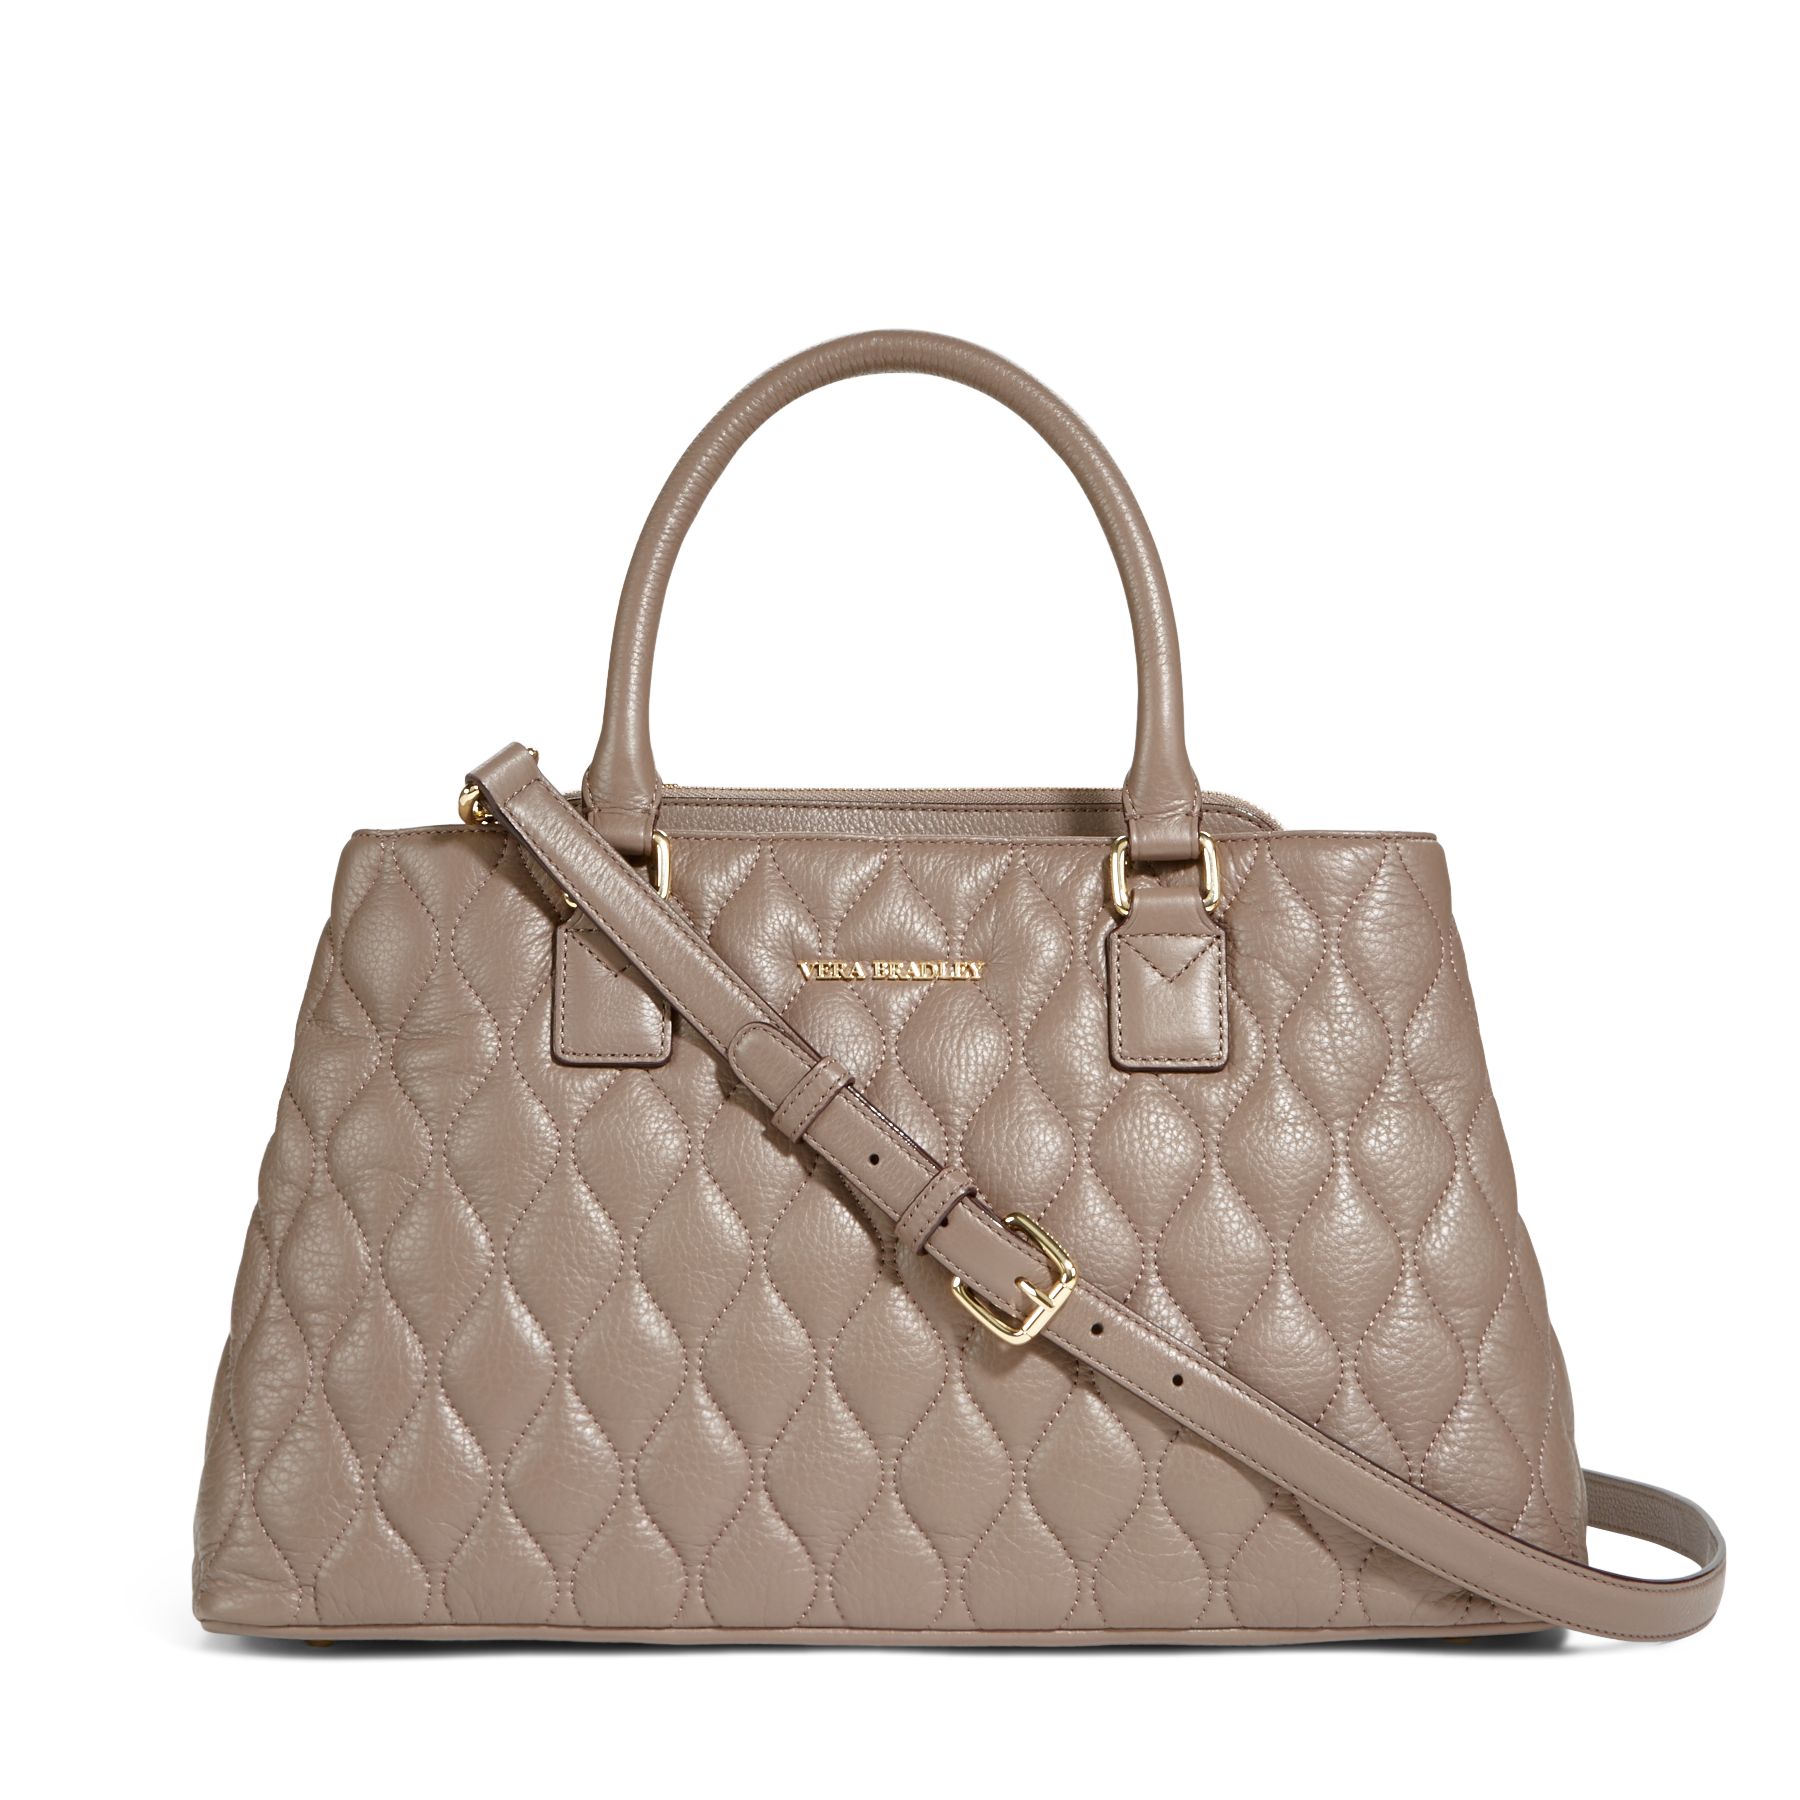 Vera Bradley Quilted Leather Emma Satchel Bag | eBay